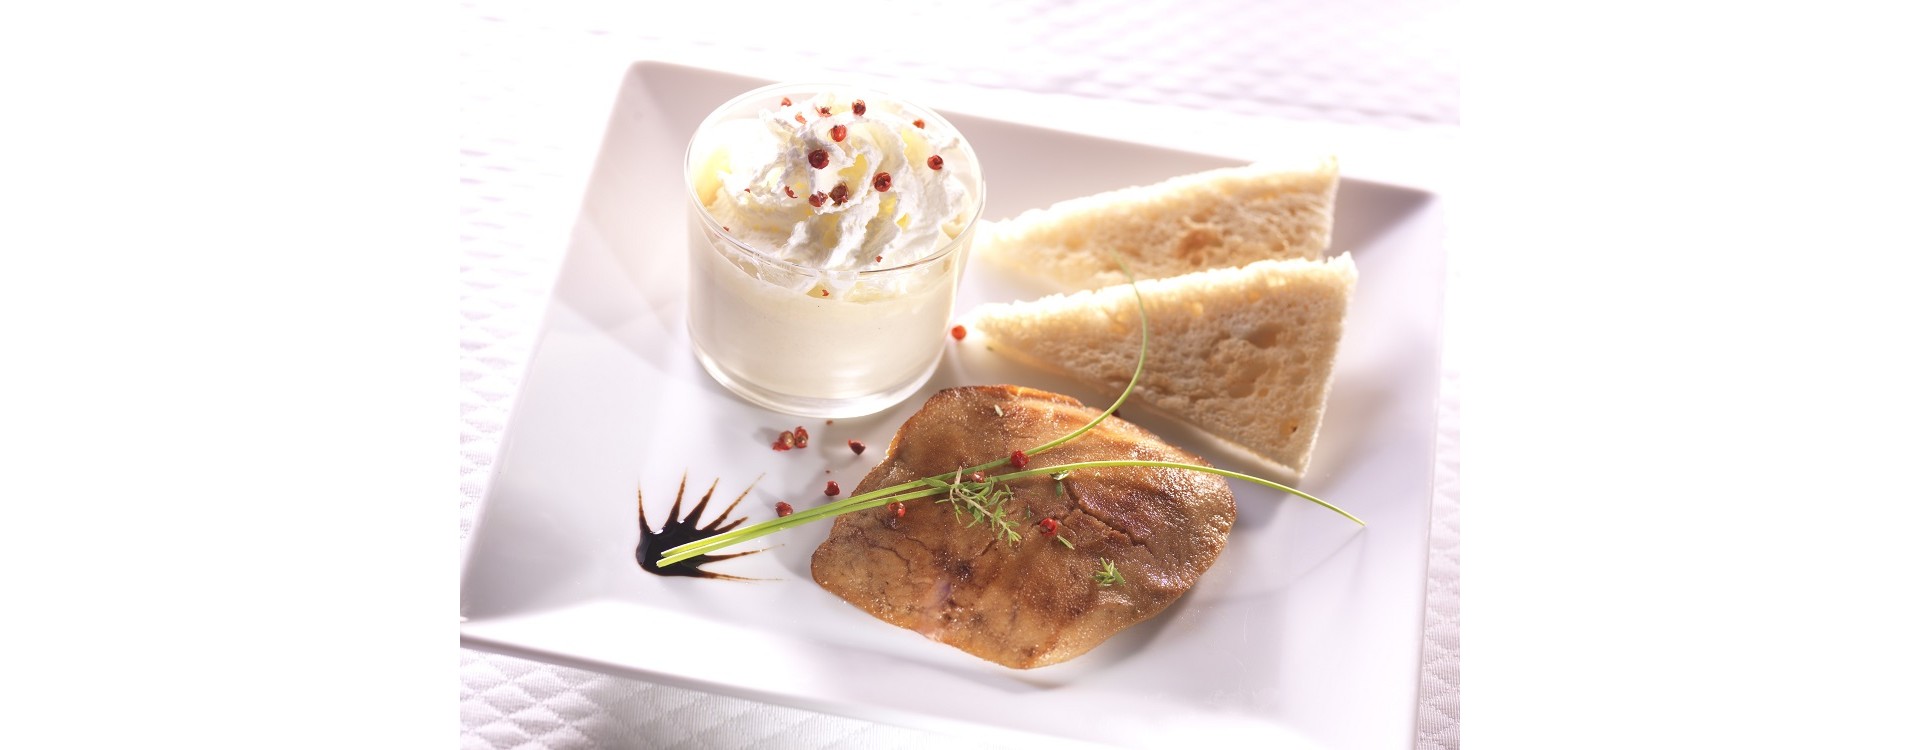 Capuccino de foie gras et poêlé de foie gras